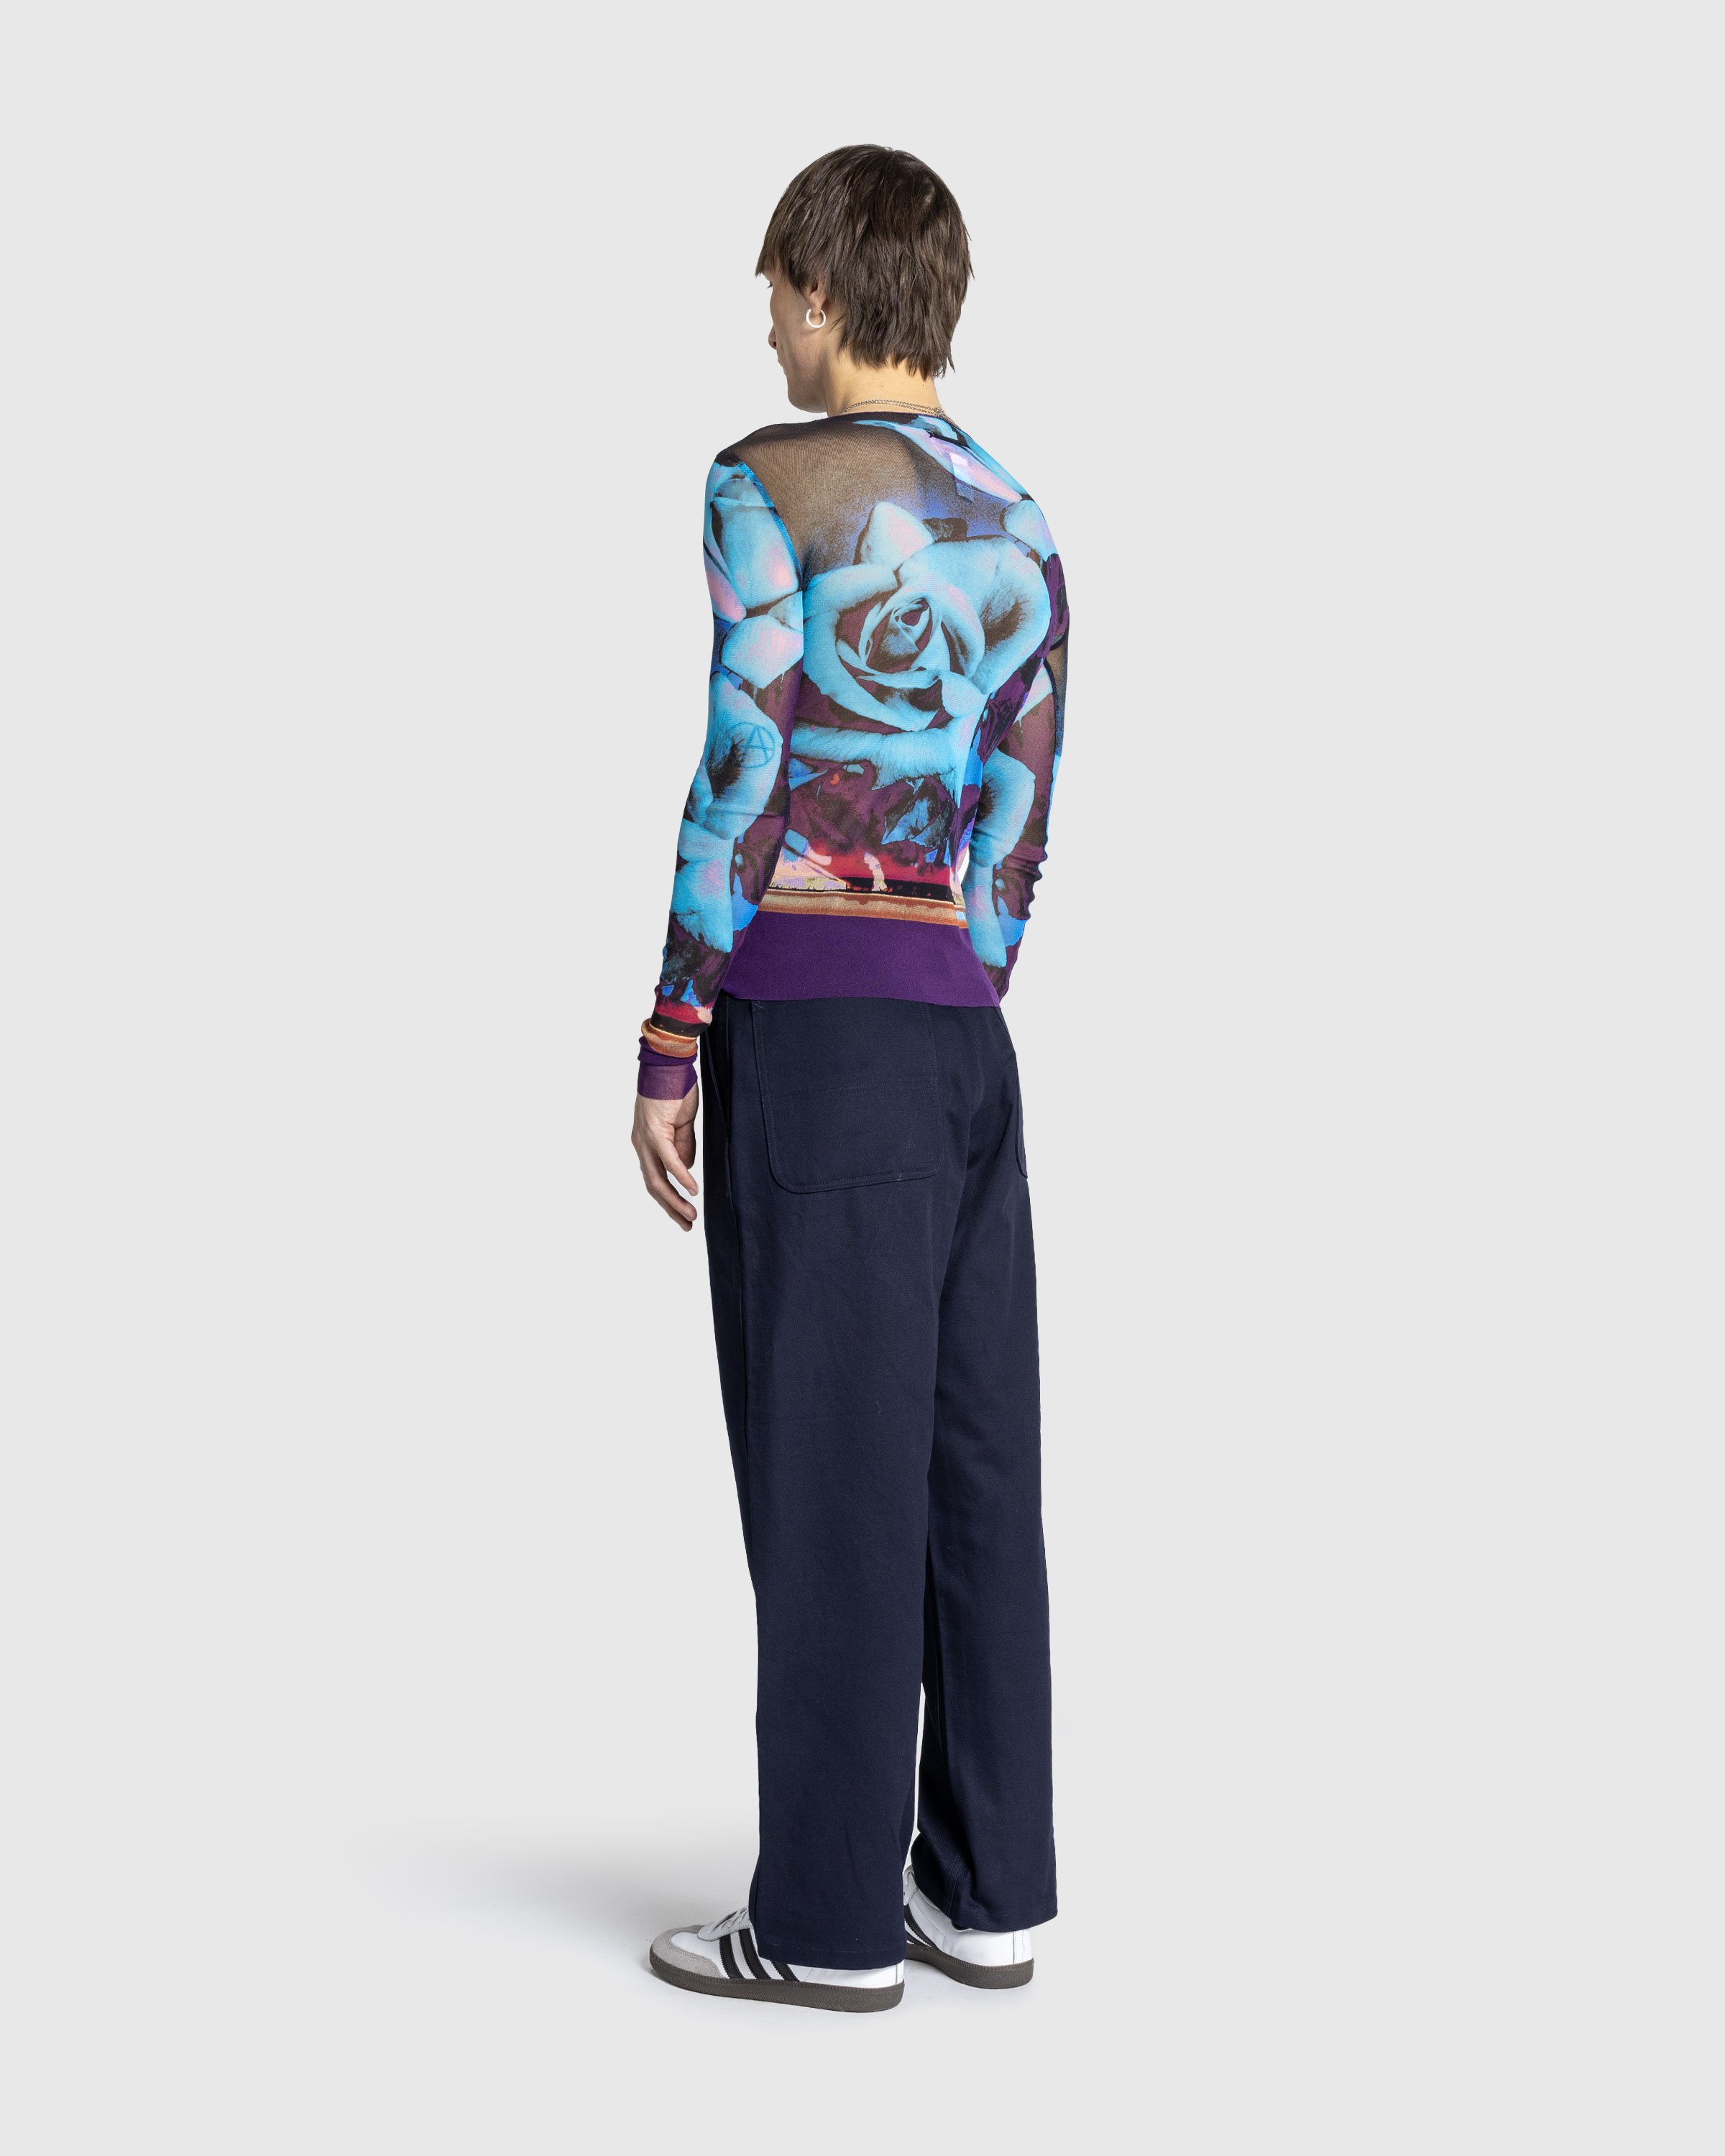 Jean Paul Gaultier - Mesh Long Sleeves Top Printed "Roses" Purple/Blue/Palepink - Clothing - Multi - Image 4